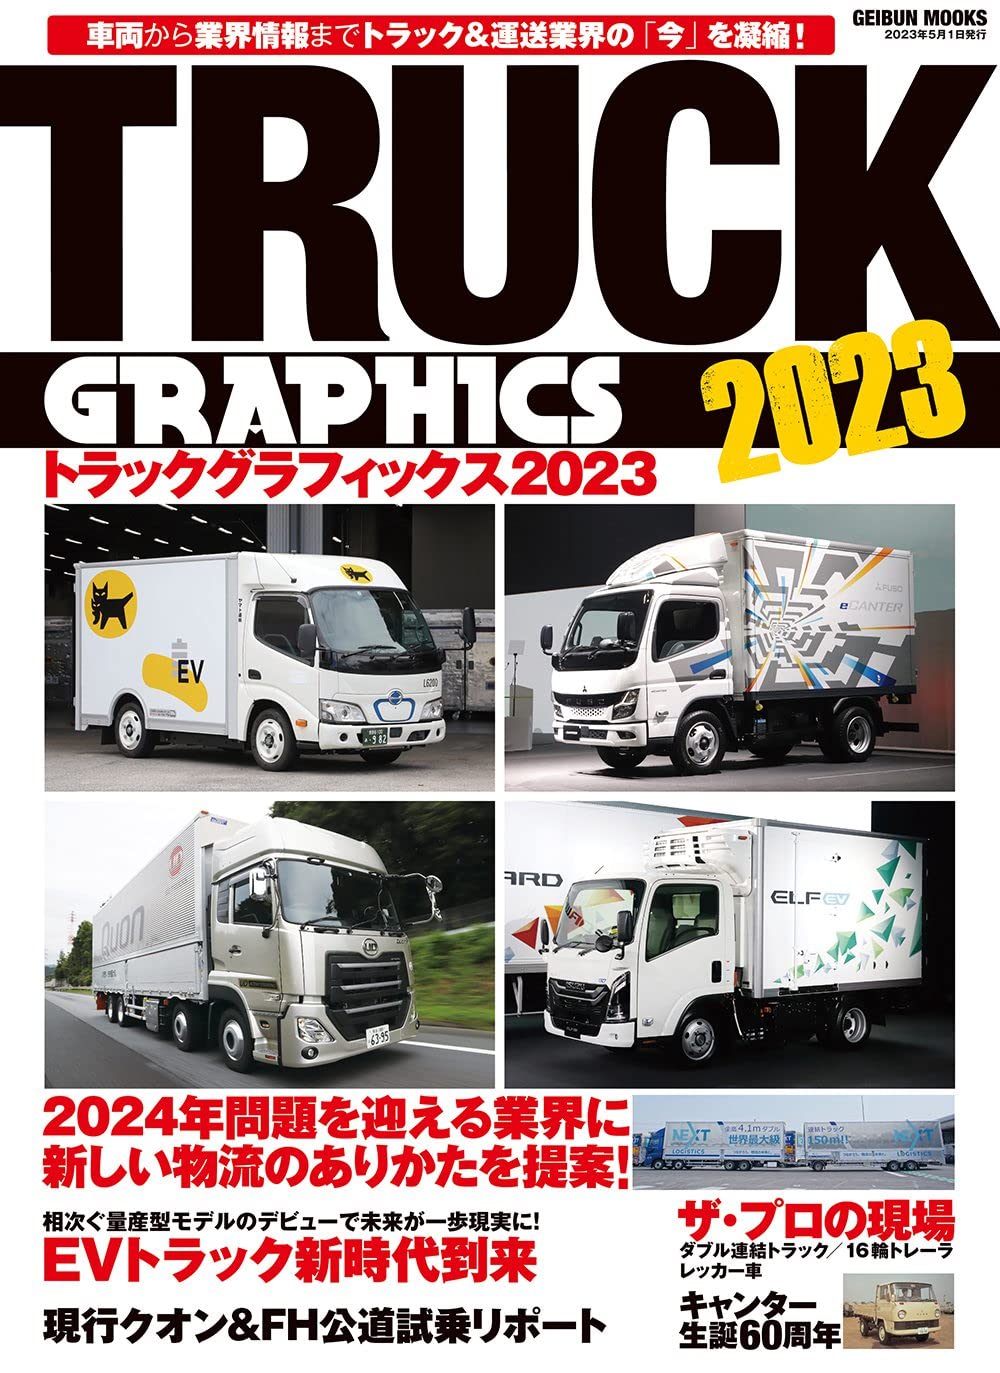 トラックグラフィックス2023 (GEIBUN MOOKS)